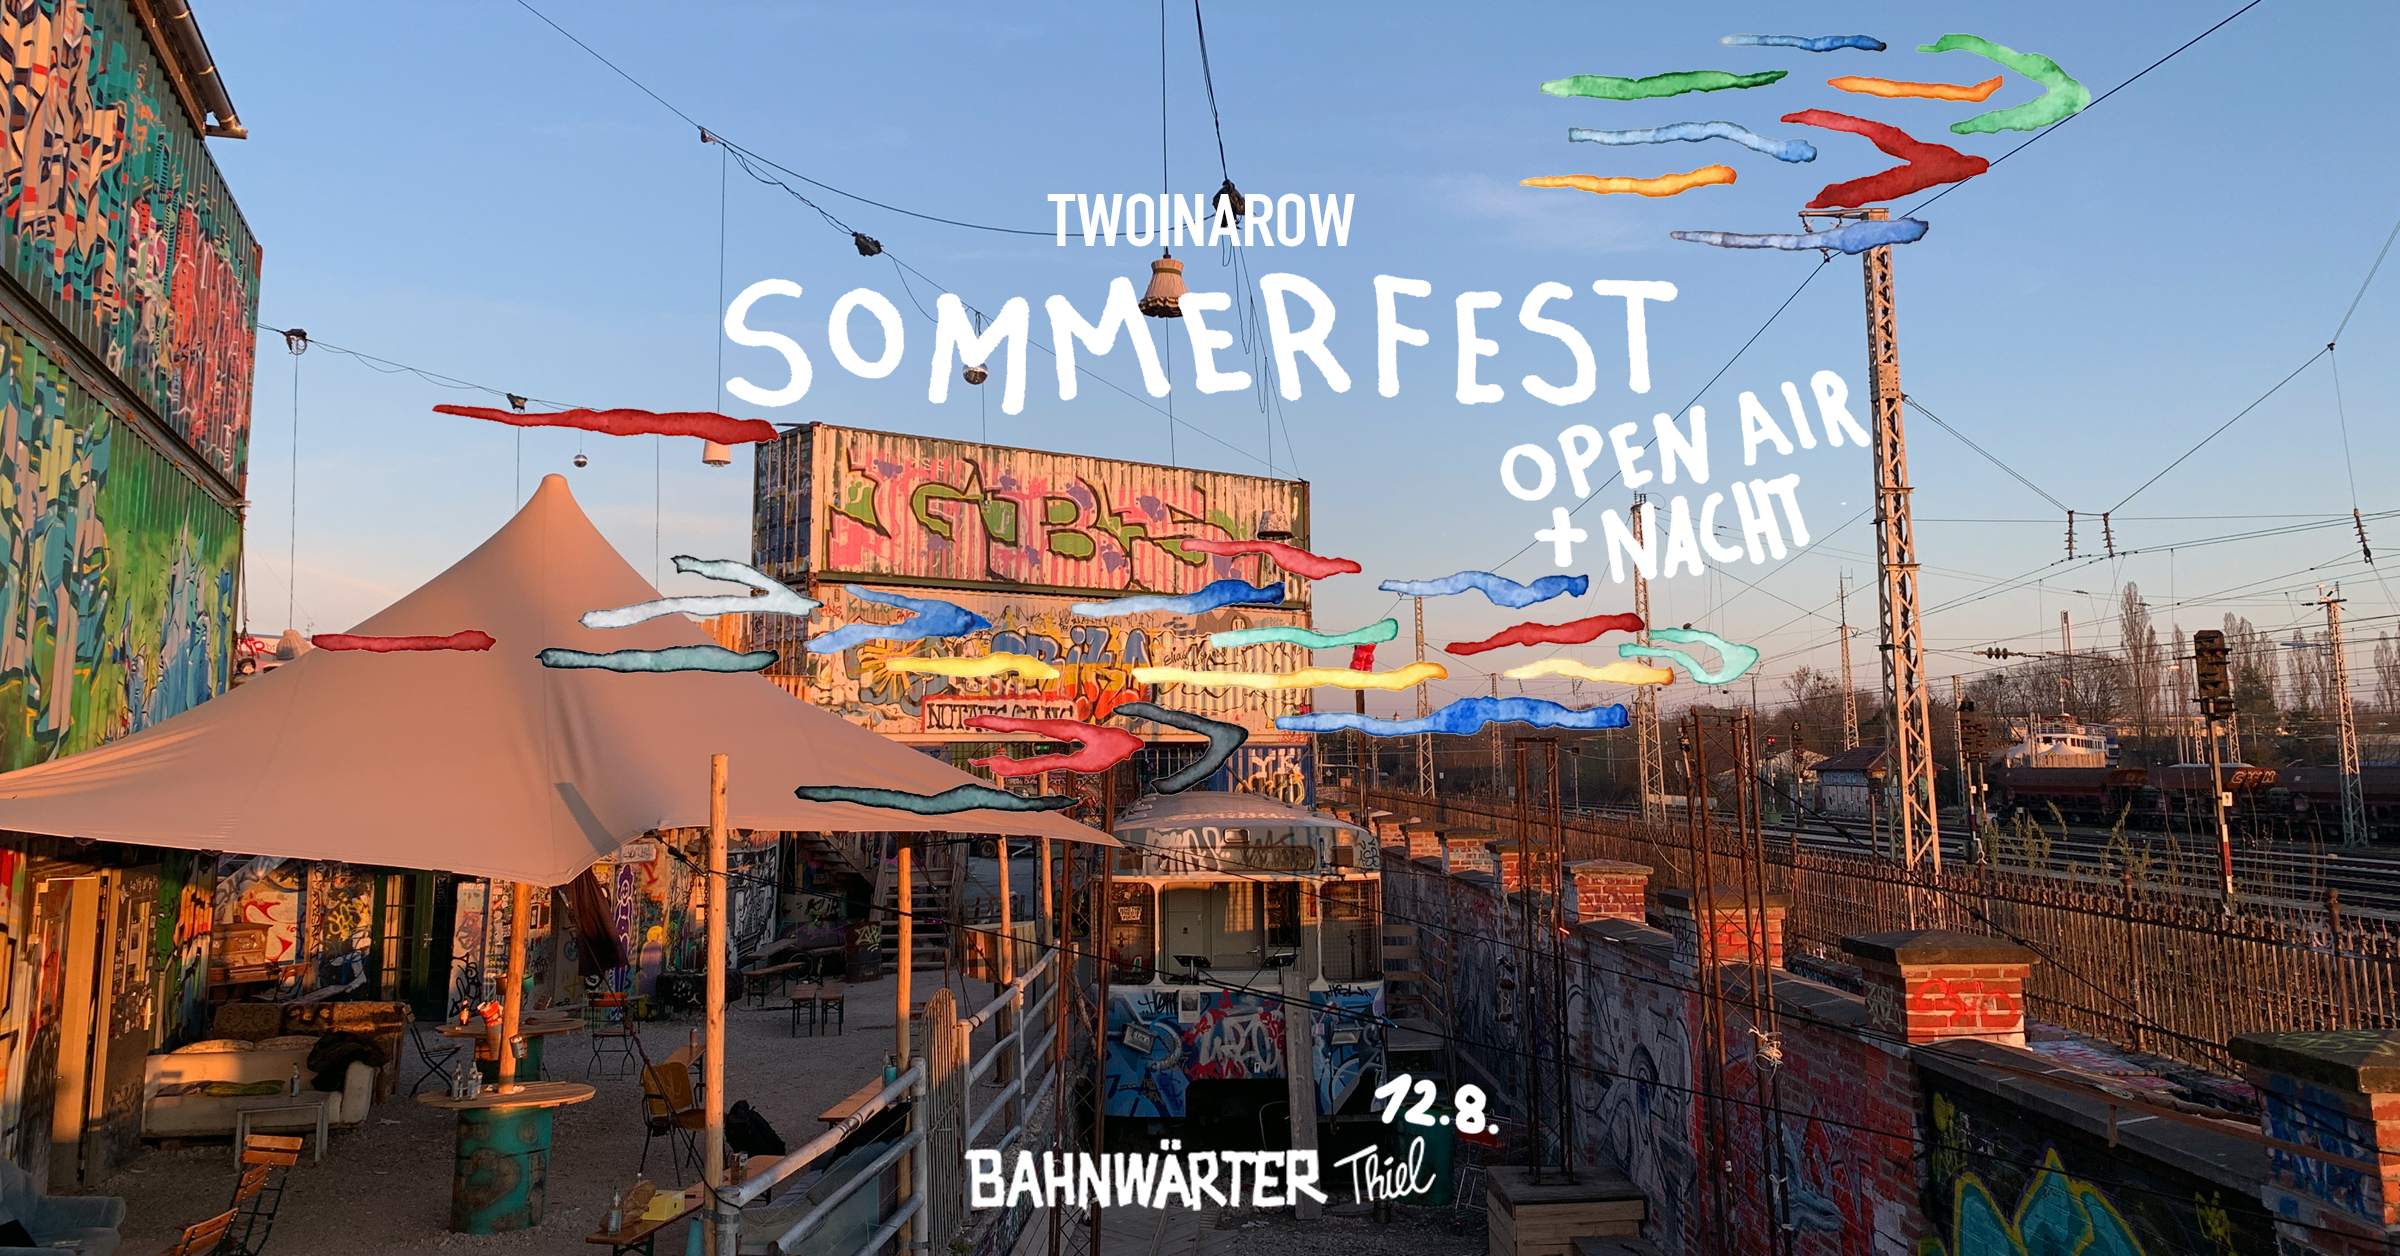 Two In A Row Sommerfest - Open Air + Nacht im Bahnwärter Thiel - フライヤー表